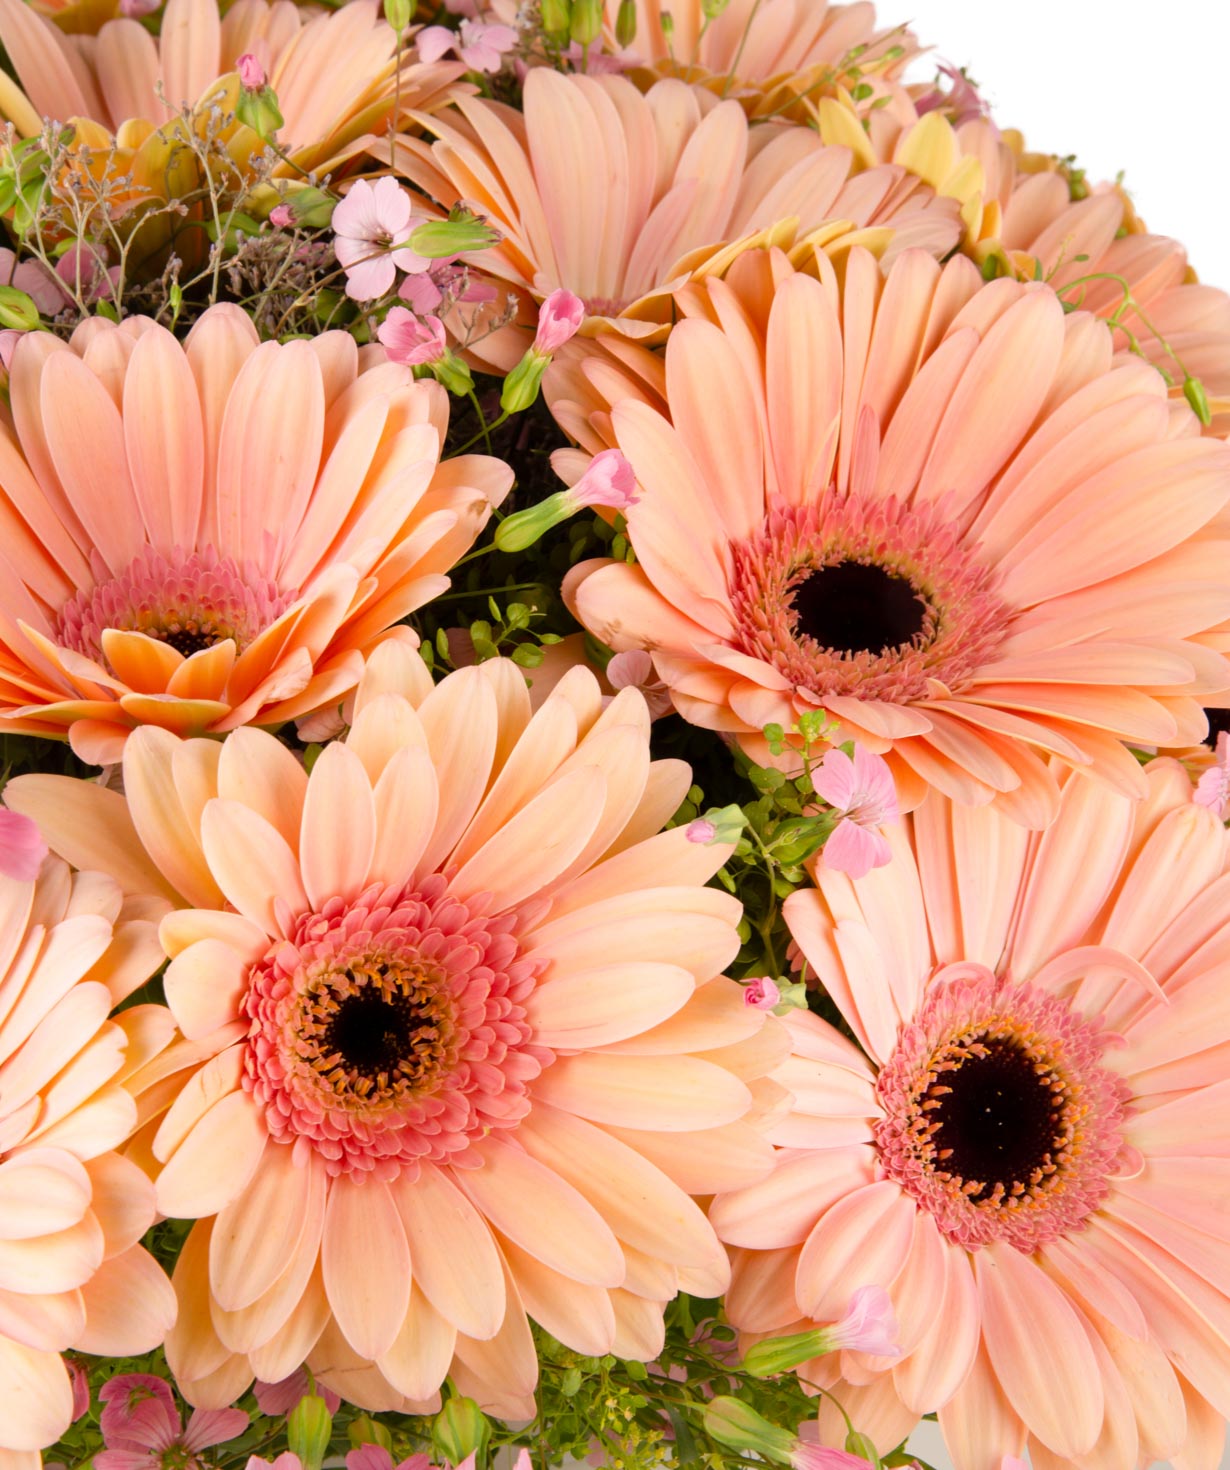 Ծաղկեփունջ «Բոնիտա Սփրինգս» հերբերաներով և դաշտային ծաղիկներով